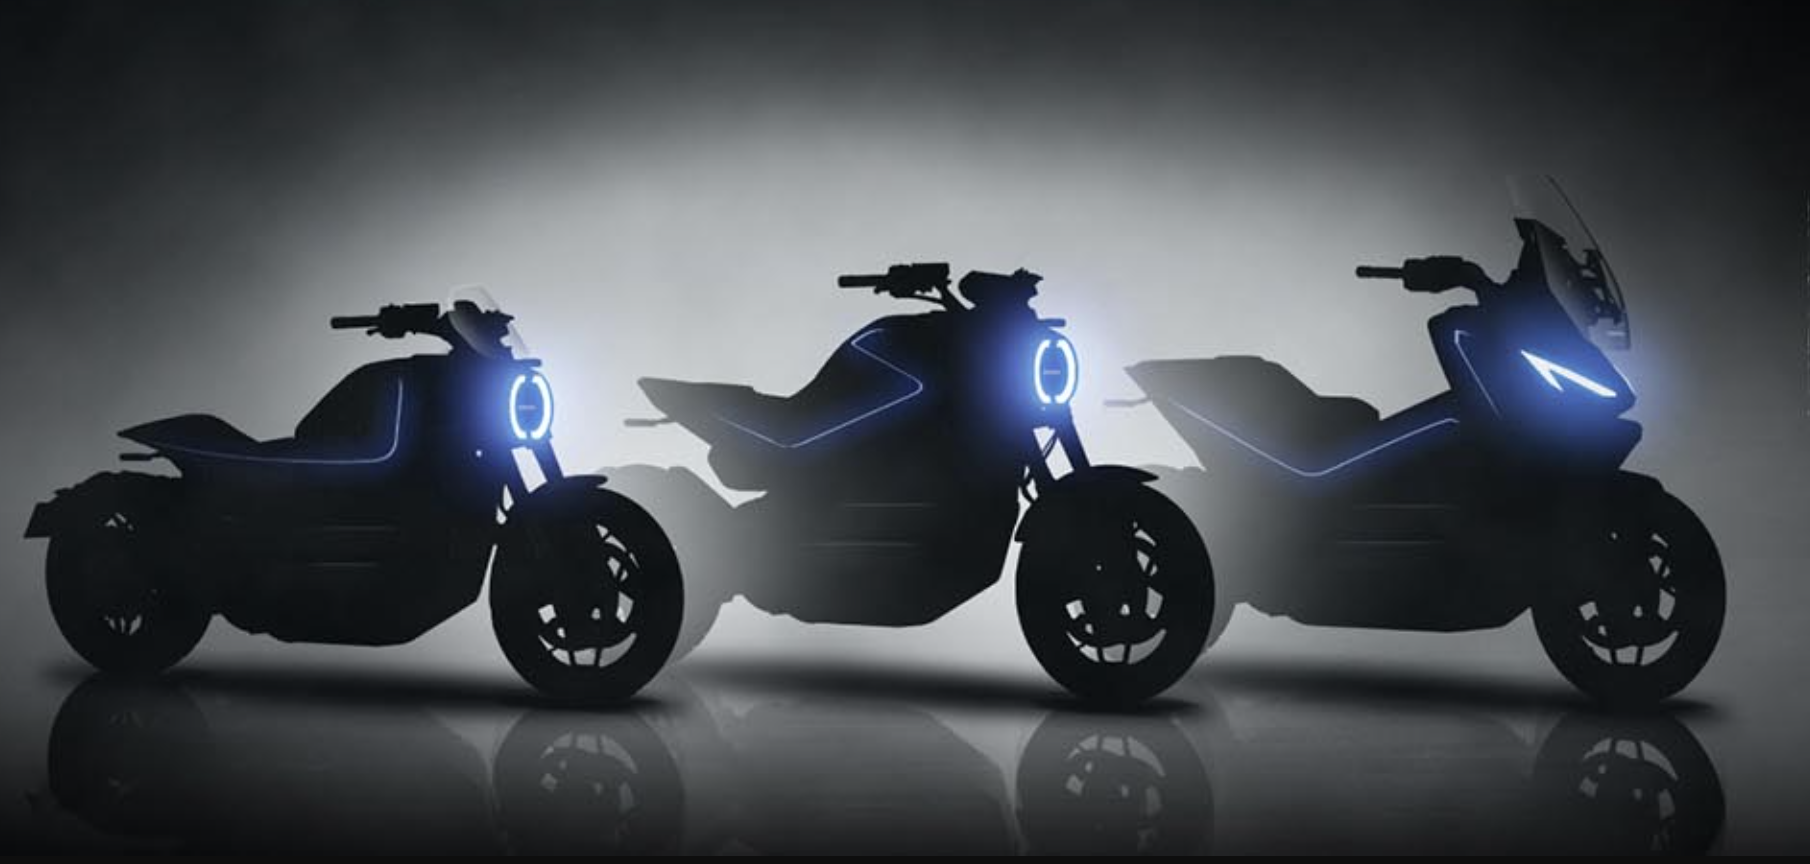 ホンダ、全ての二輪製品でのカーボンニュートラル実現に向けた発表、2025年までにグローバルで二輪EV10モデル以上を投入